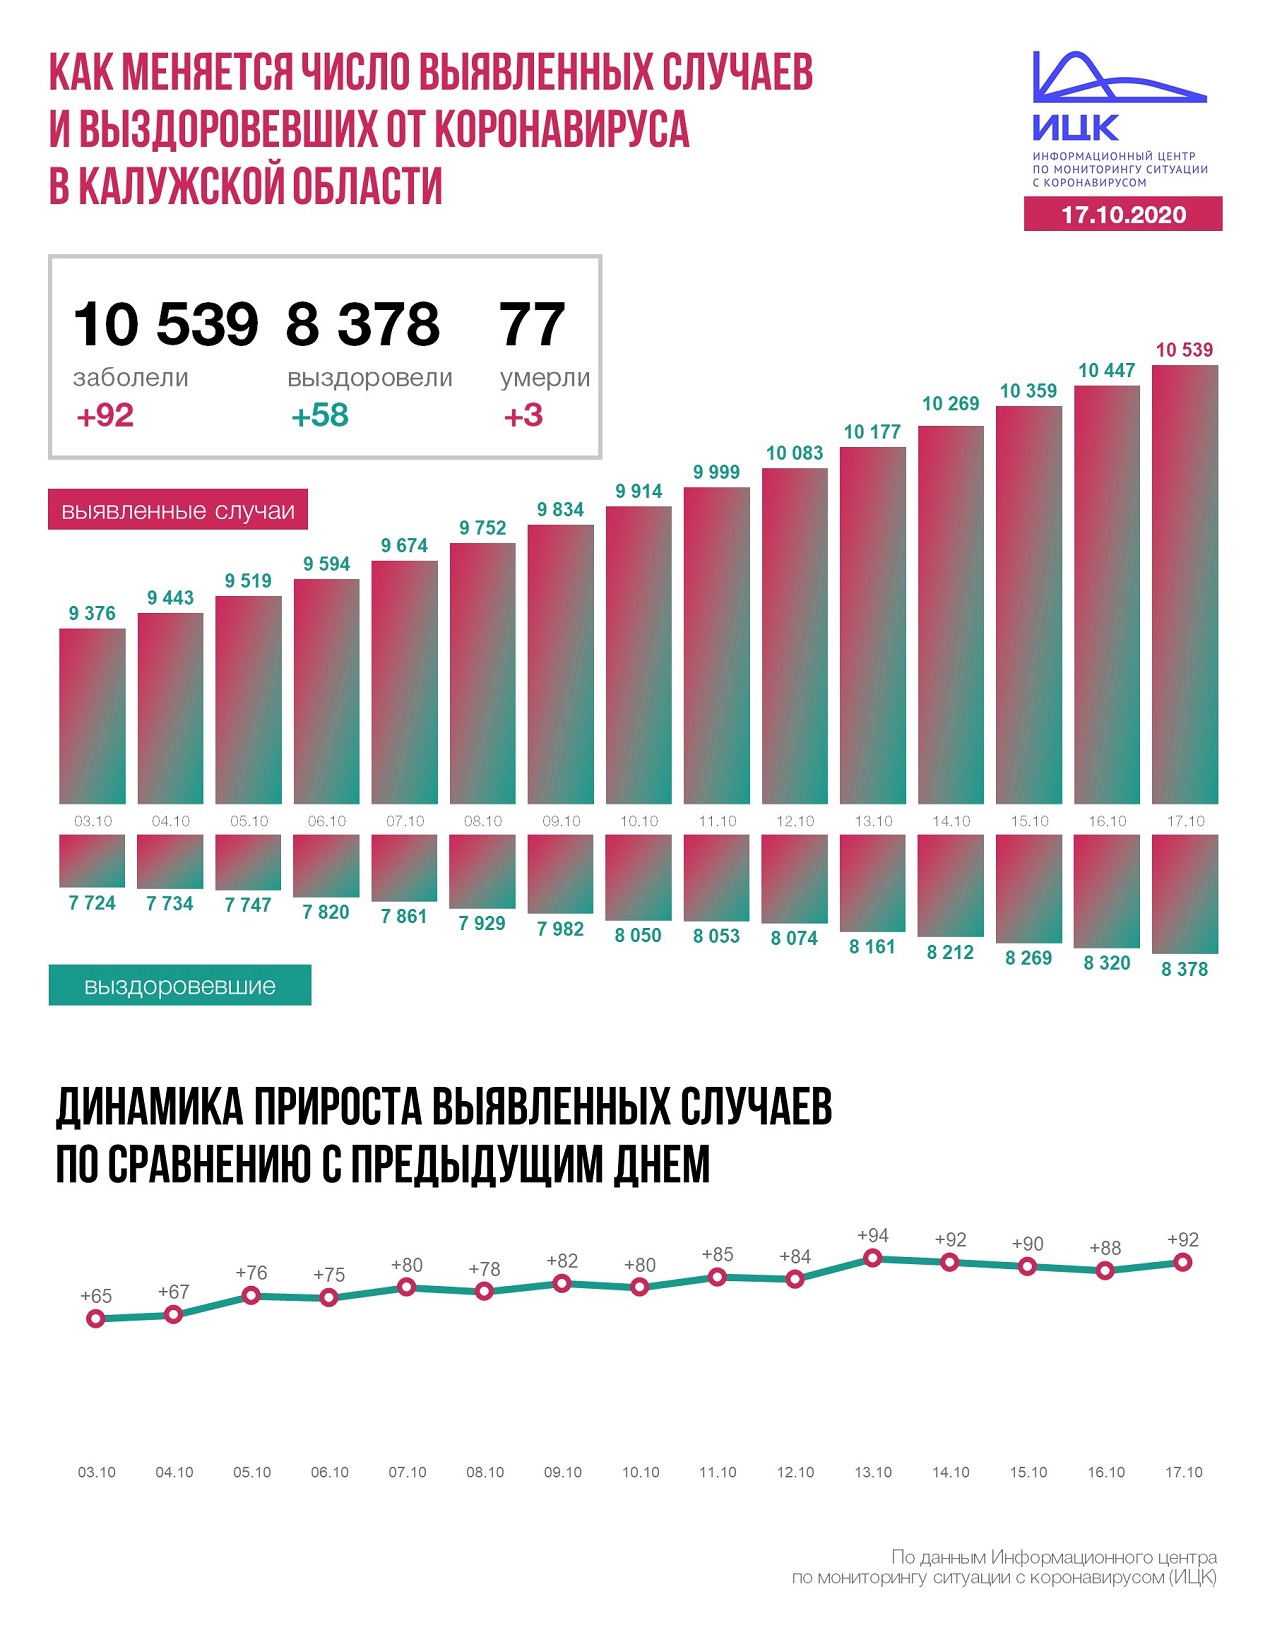 Официальные данные федерального оперативного штаба по коронавирусу в Калужской области на 17 октября 2020 года.